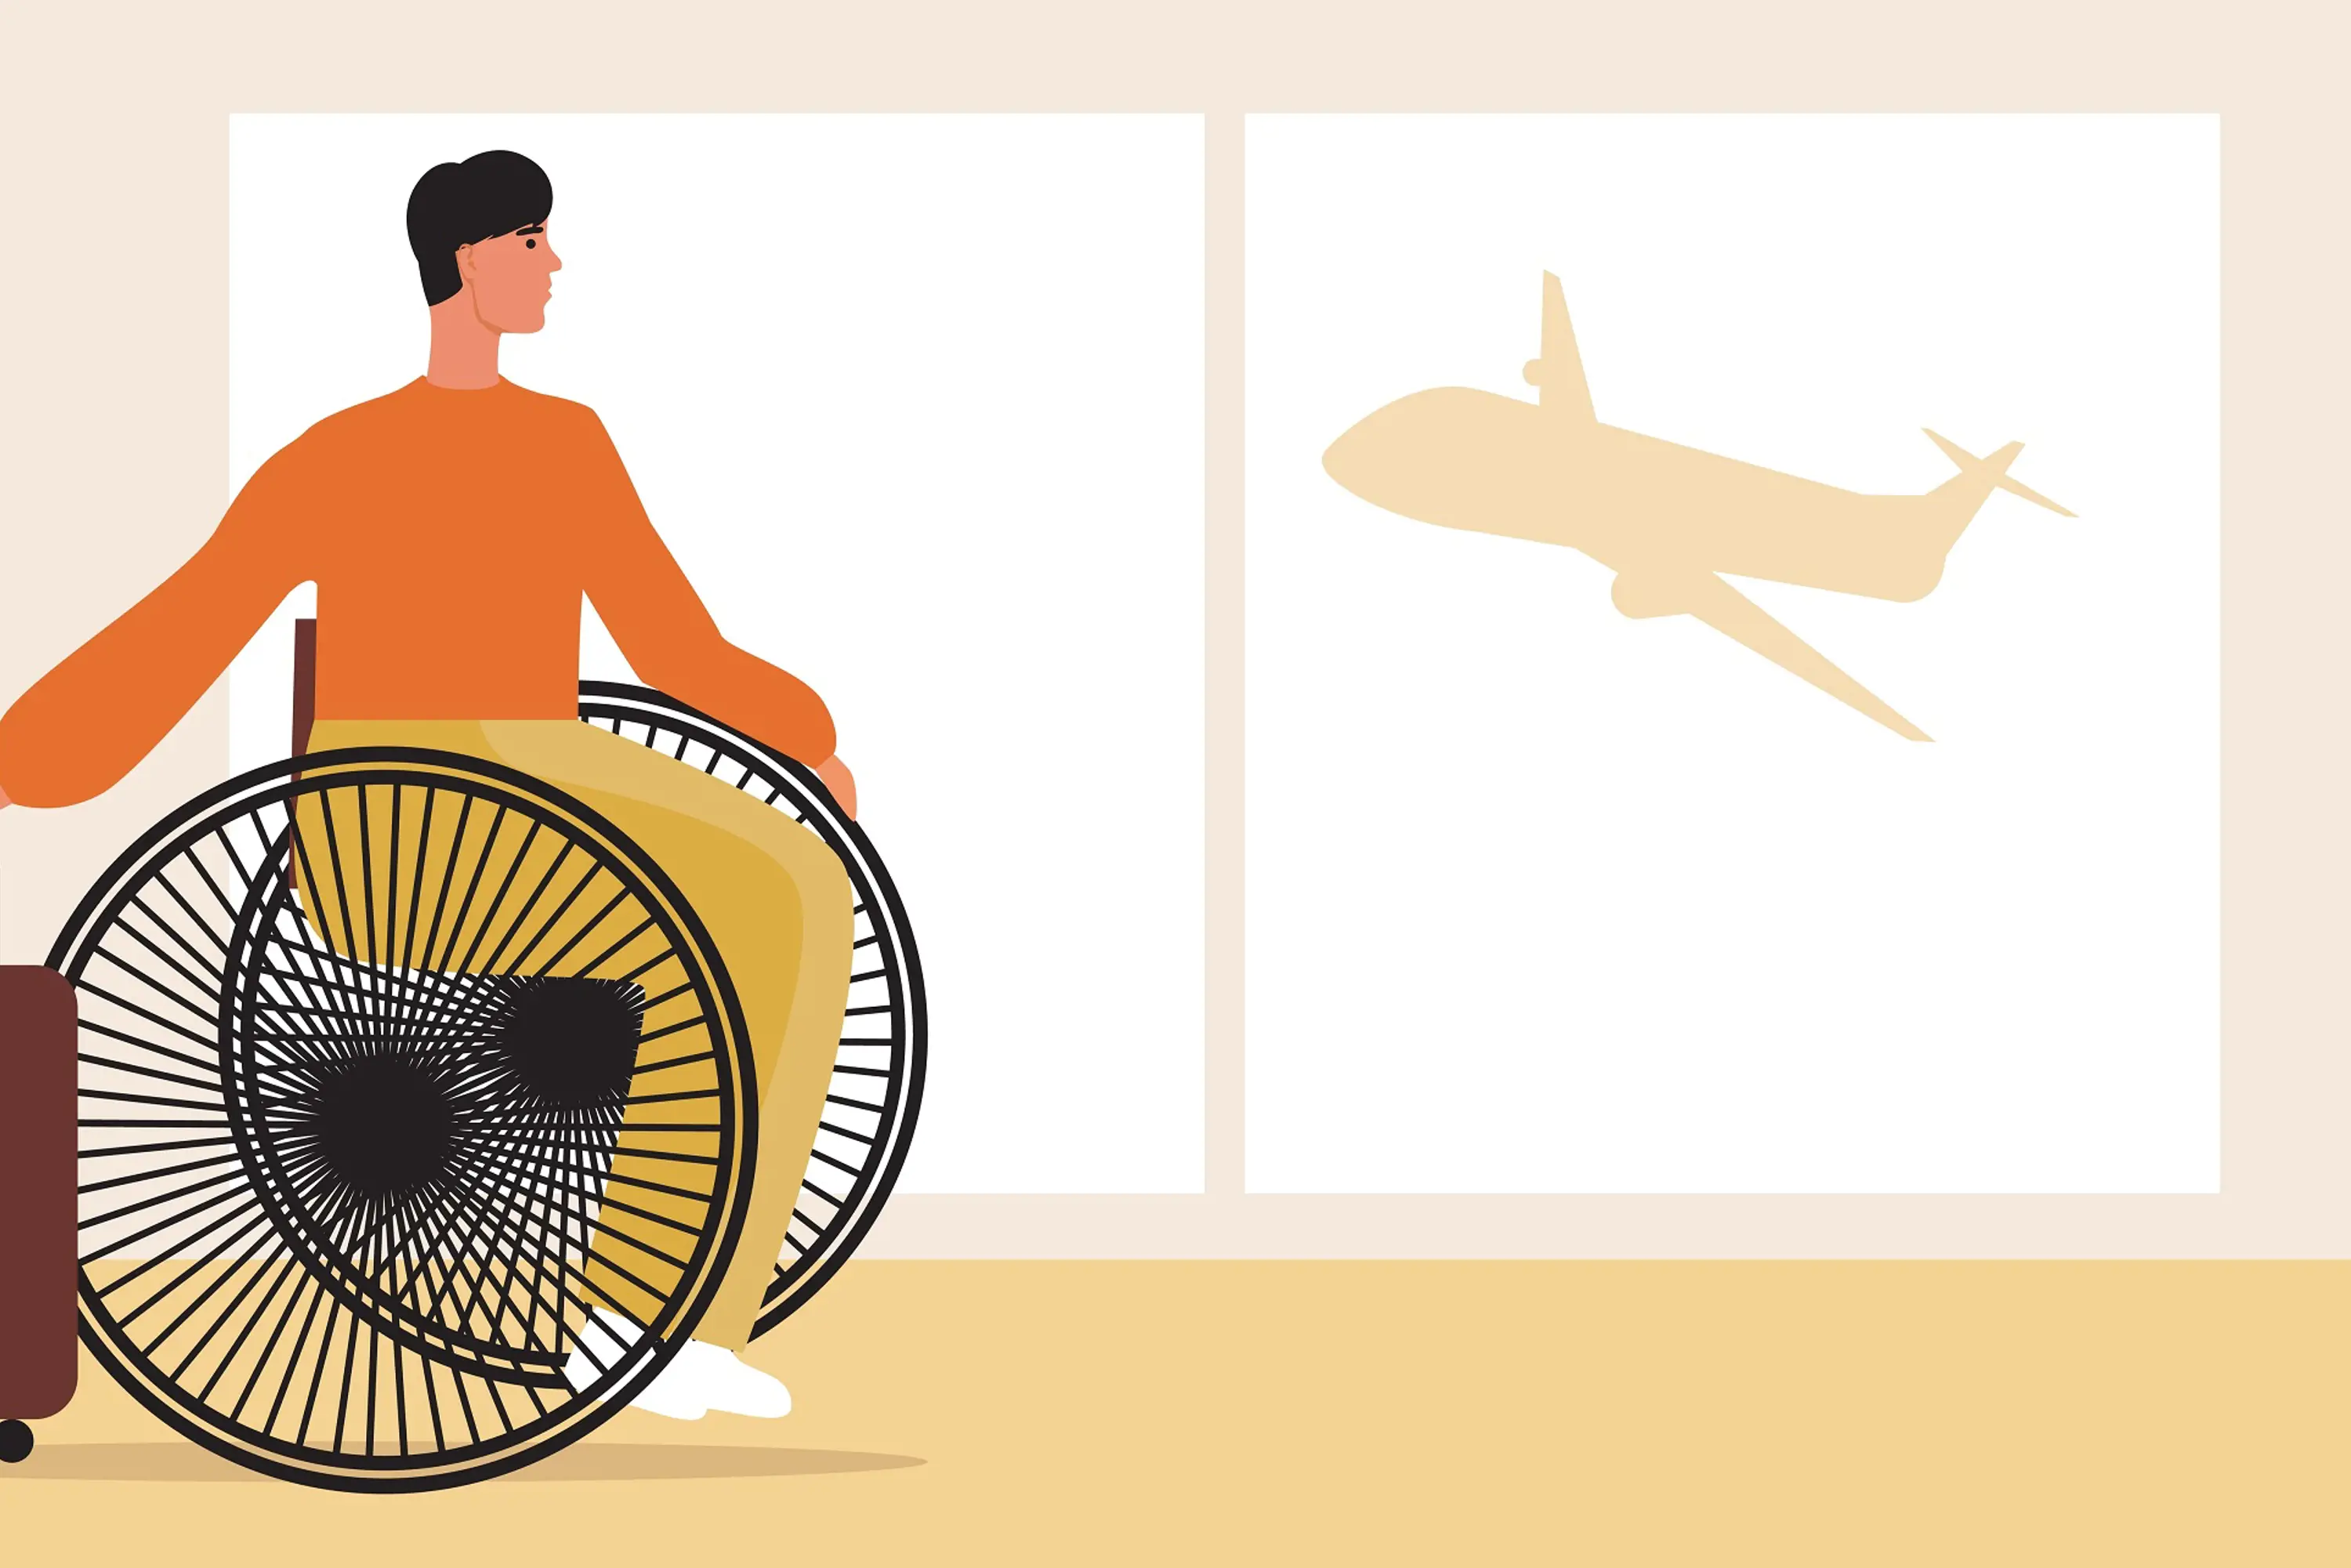 Rullestolbruker på flyplass, illustrasjon